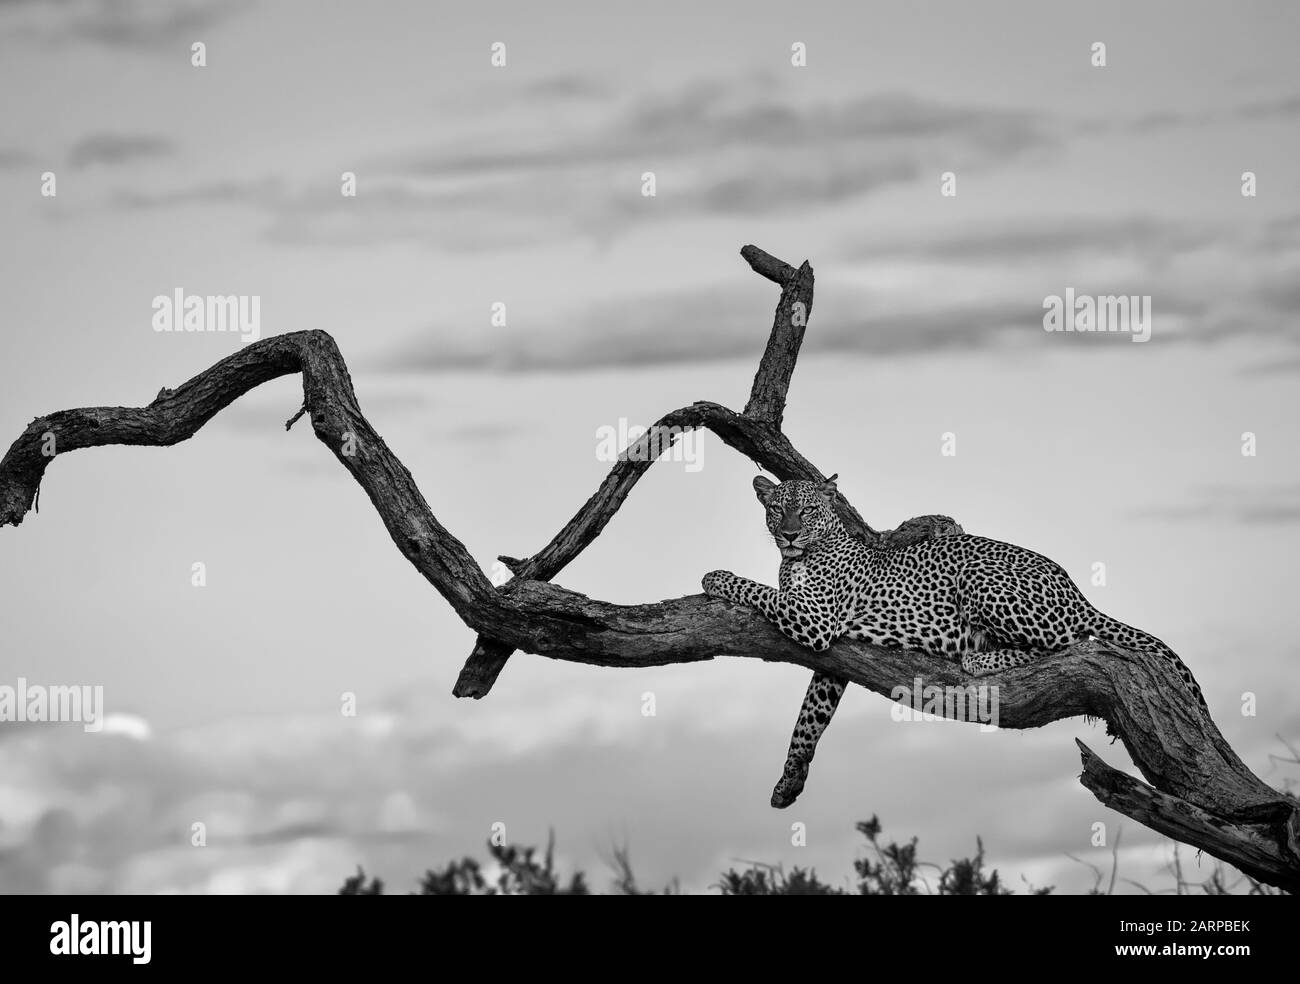 Imagen en blanco y negro del leopardo en árbol, Reserva Nacional Samburu, Kenya Foto de stock